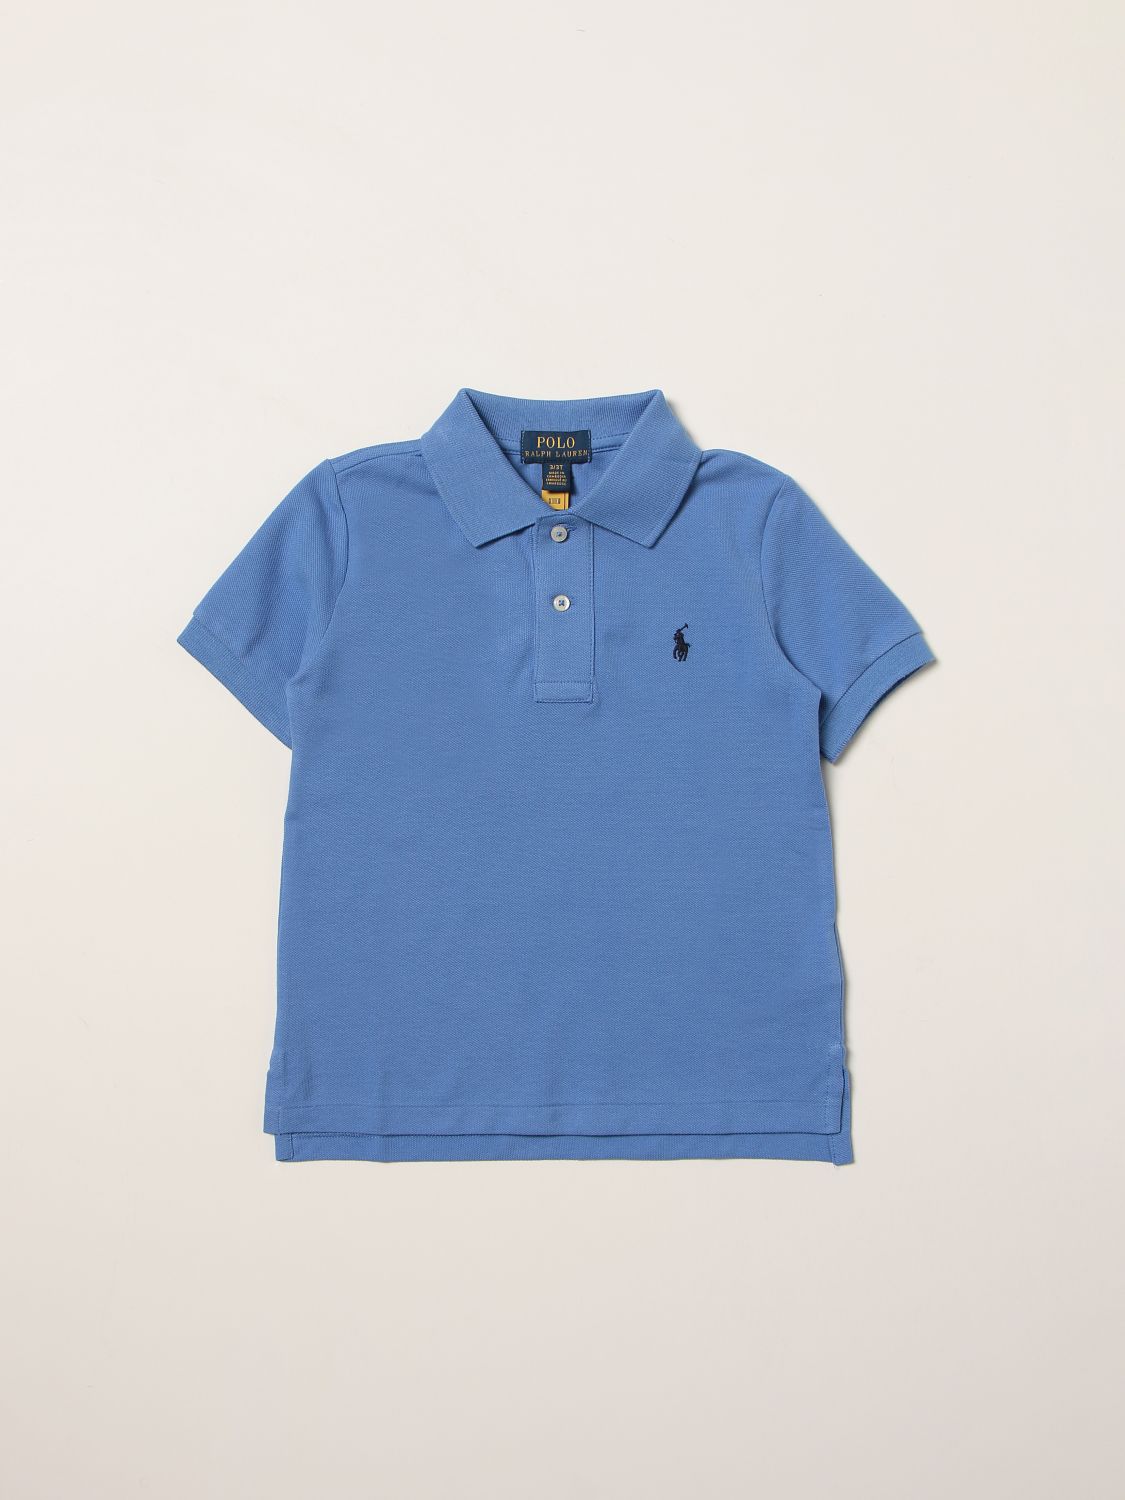 ポロシャツ ポロラルフローレン: ポロシャツ Polo Ralph Lauren 男の子 ブルー 1